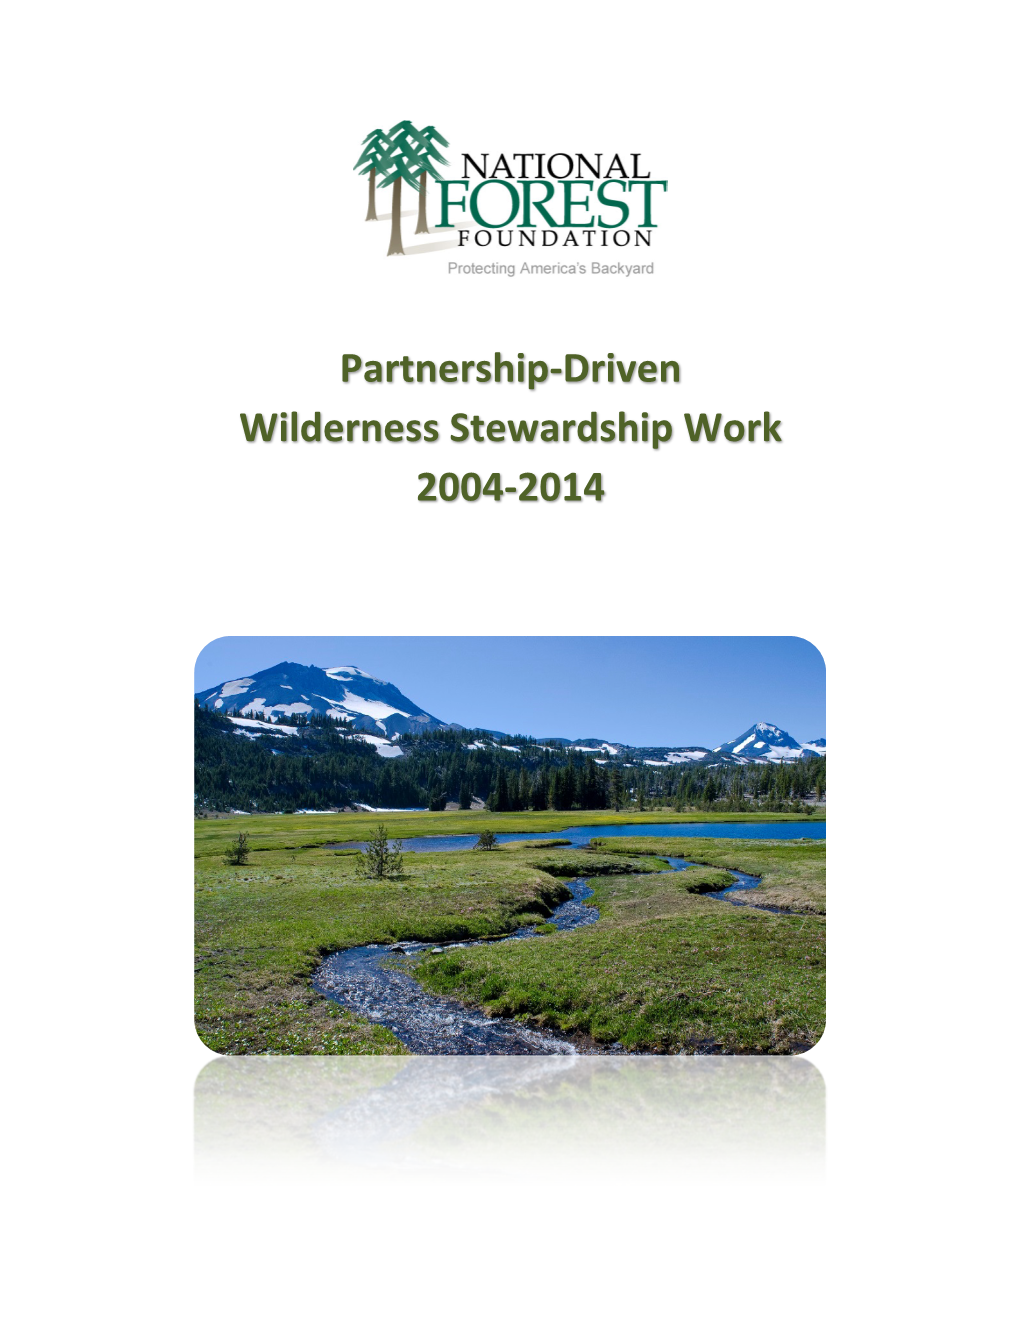 Partnership-Driven Wilderness Stewardship Work 2004-2014